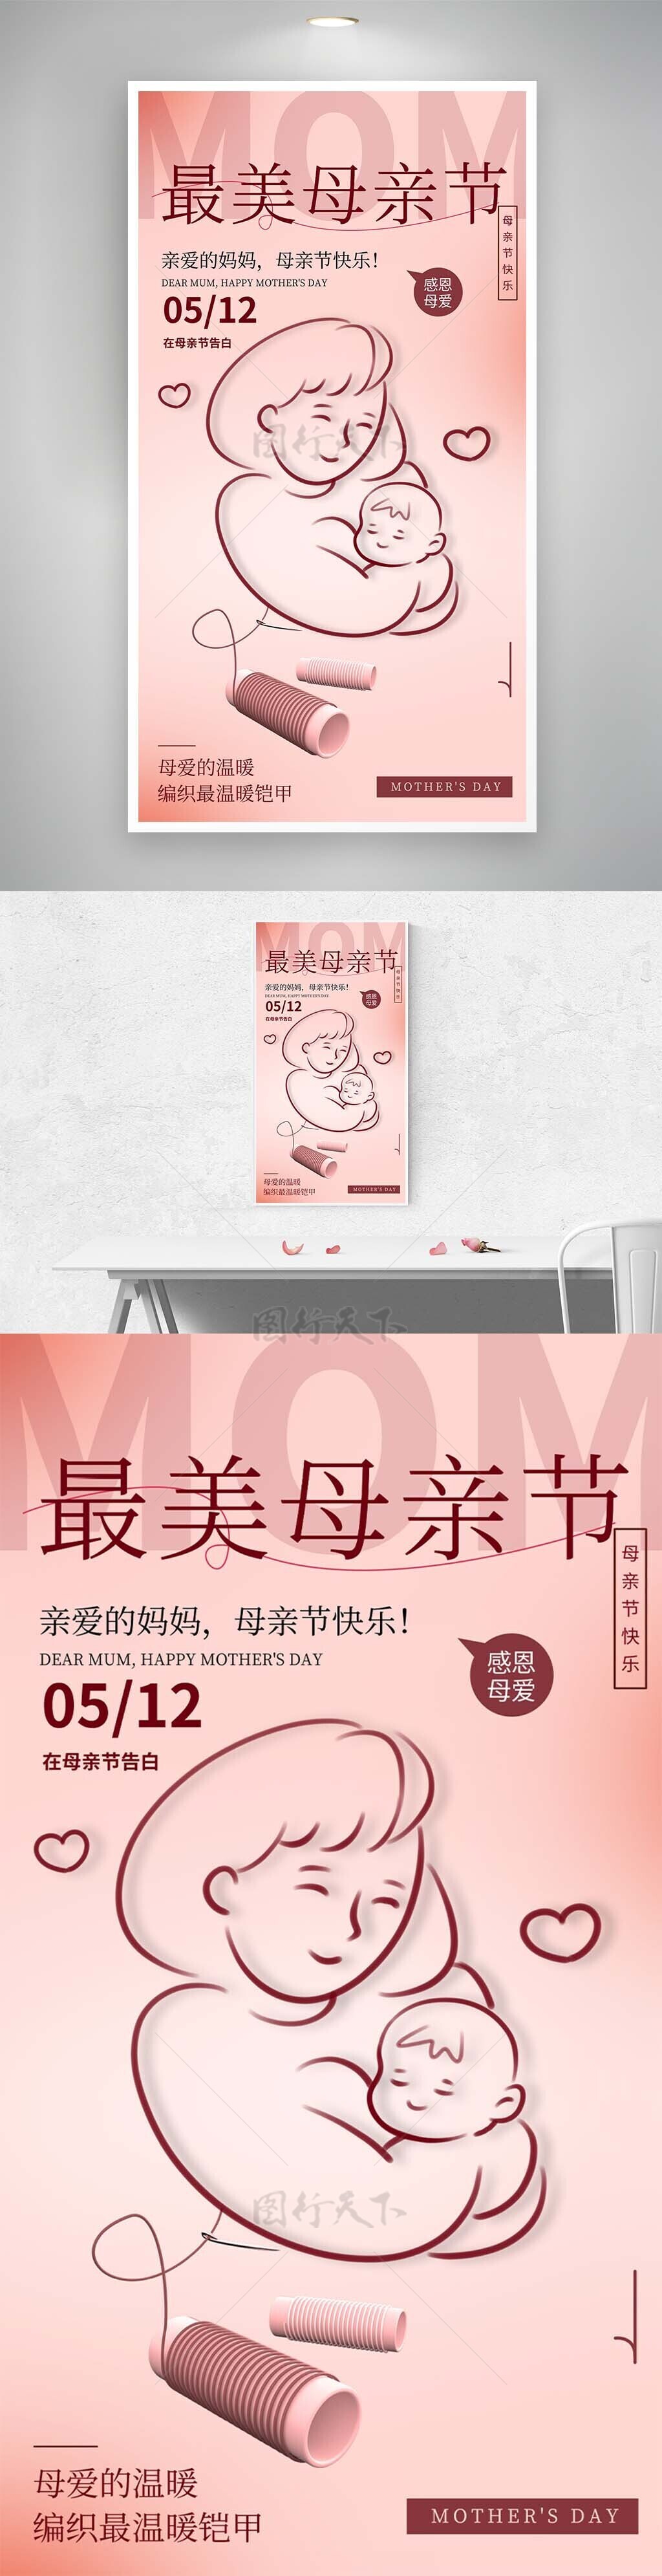 最美母亲节手绘线条温馨铠甲主题海报